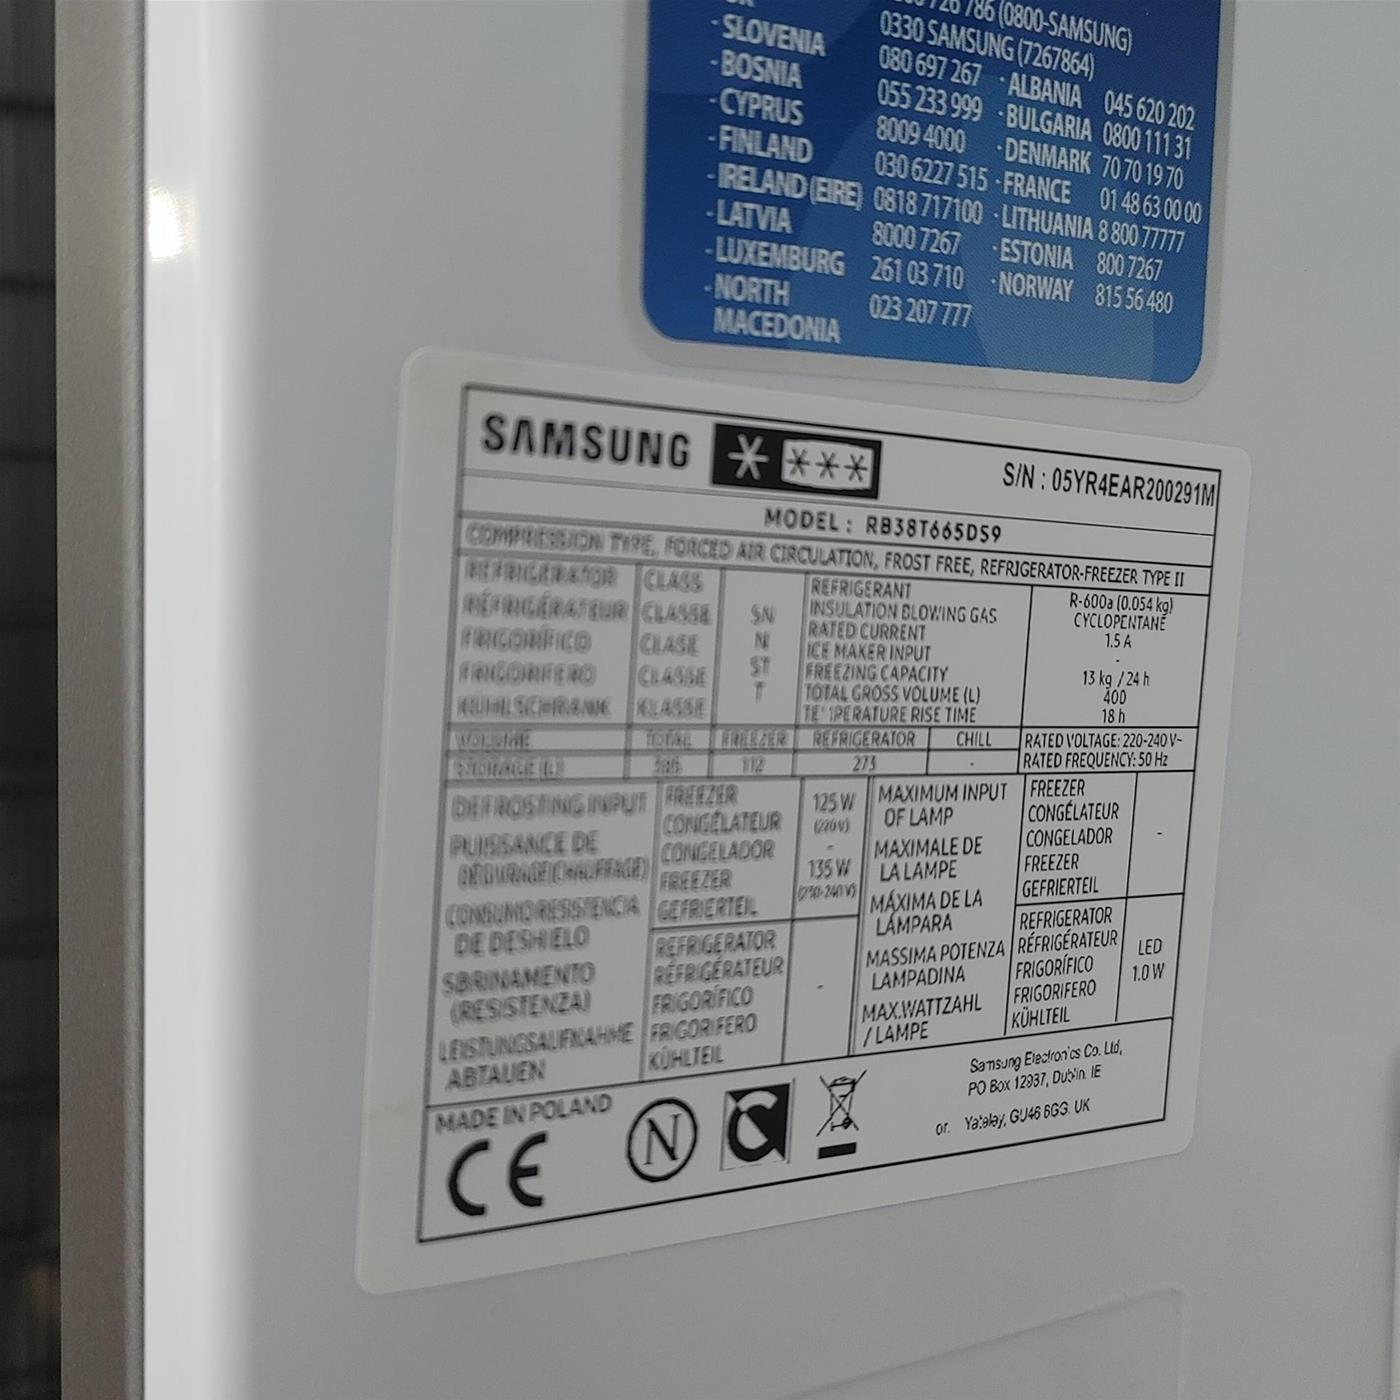 Samsung RB38T665DS9 frigorifero con congelatore Libera installazione 385 L D Argento, Total No Frost